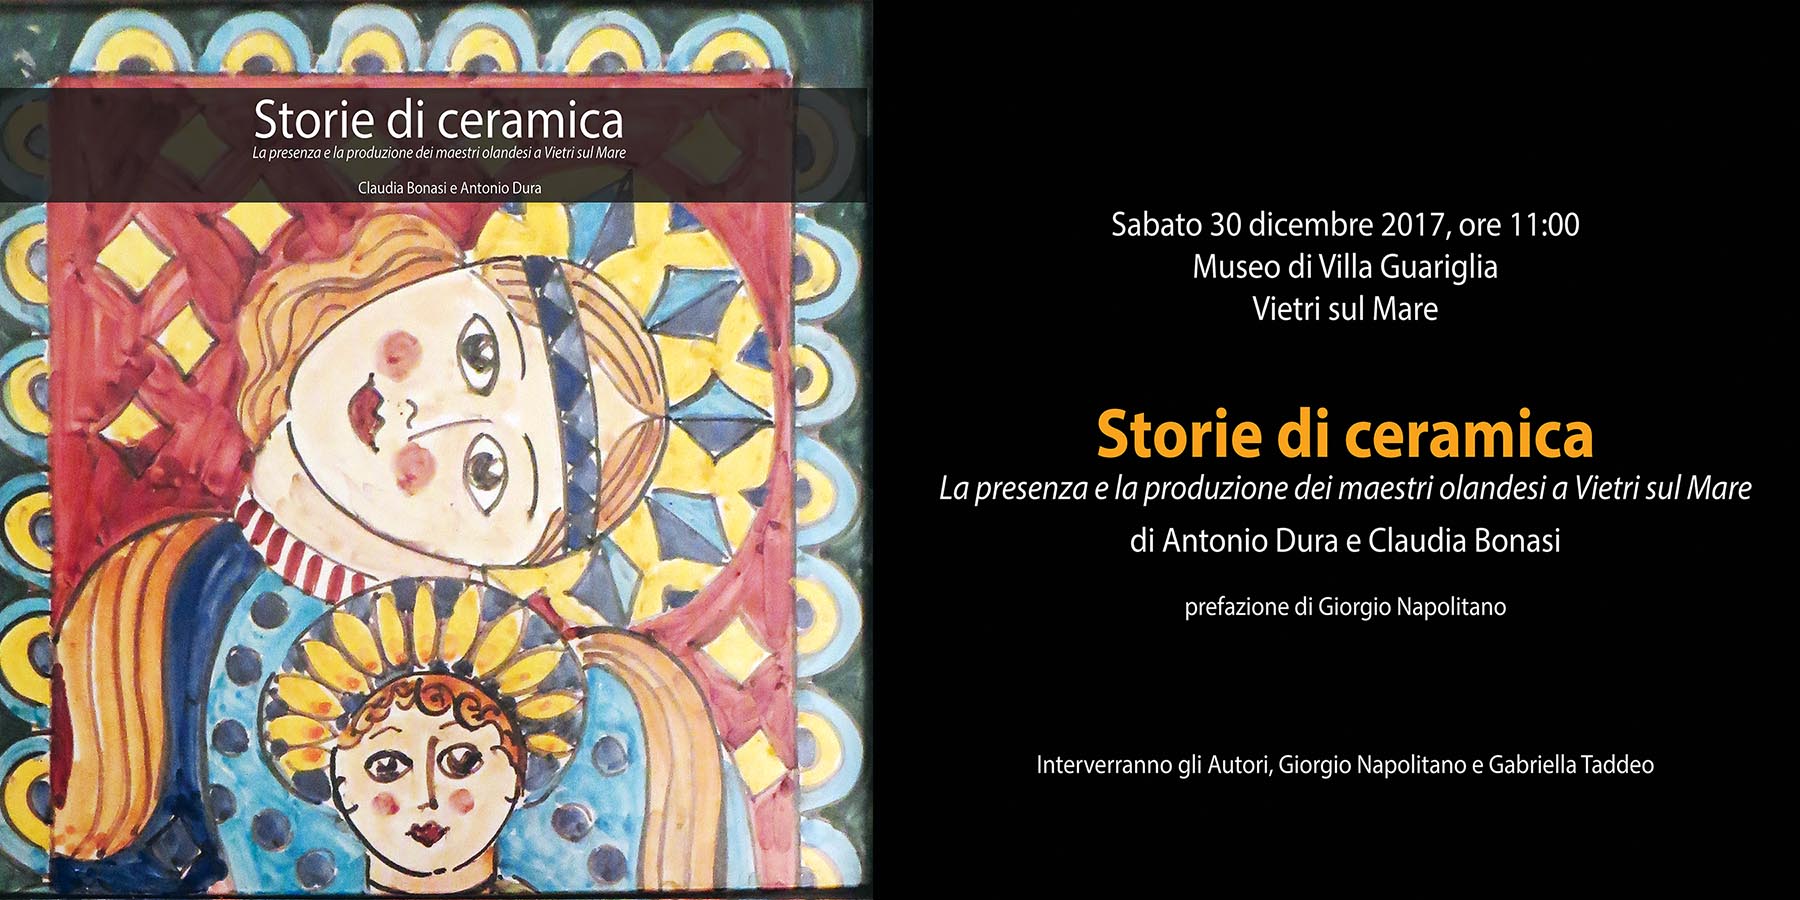 Storie di ceramica di Antonio Dura e Claudia Bonasi a Villa Guariglia di Vietri sul Mare